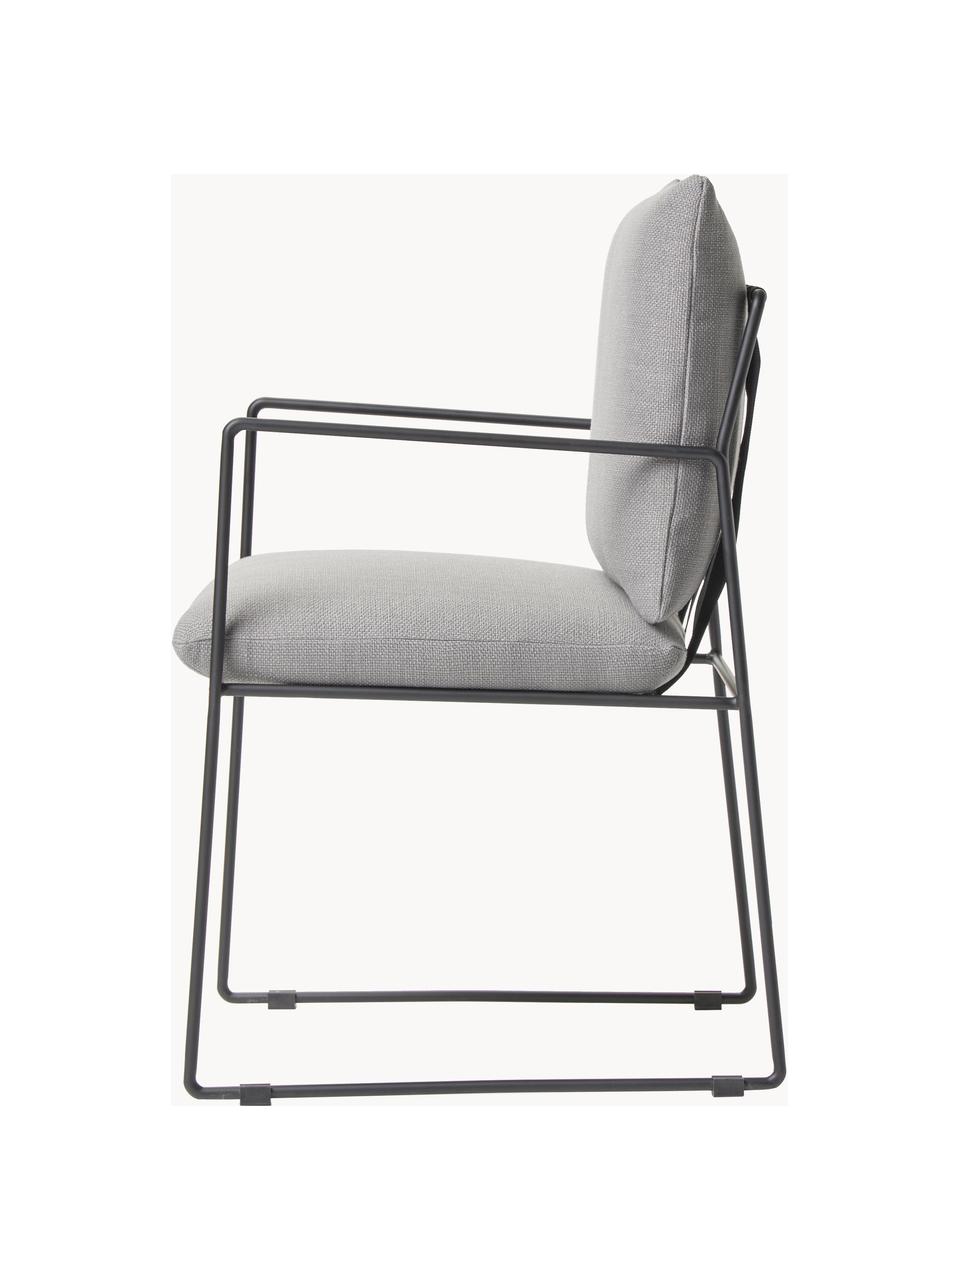 Krzesło tapicerowane z metalowym stelażem Wayne, Tapicerka: 80% poliester, 20% len Dz, Stelaż: metal malowany proszkowo, Szara tkanina, S 54 x G 52 cm